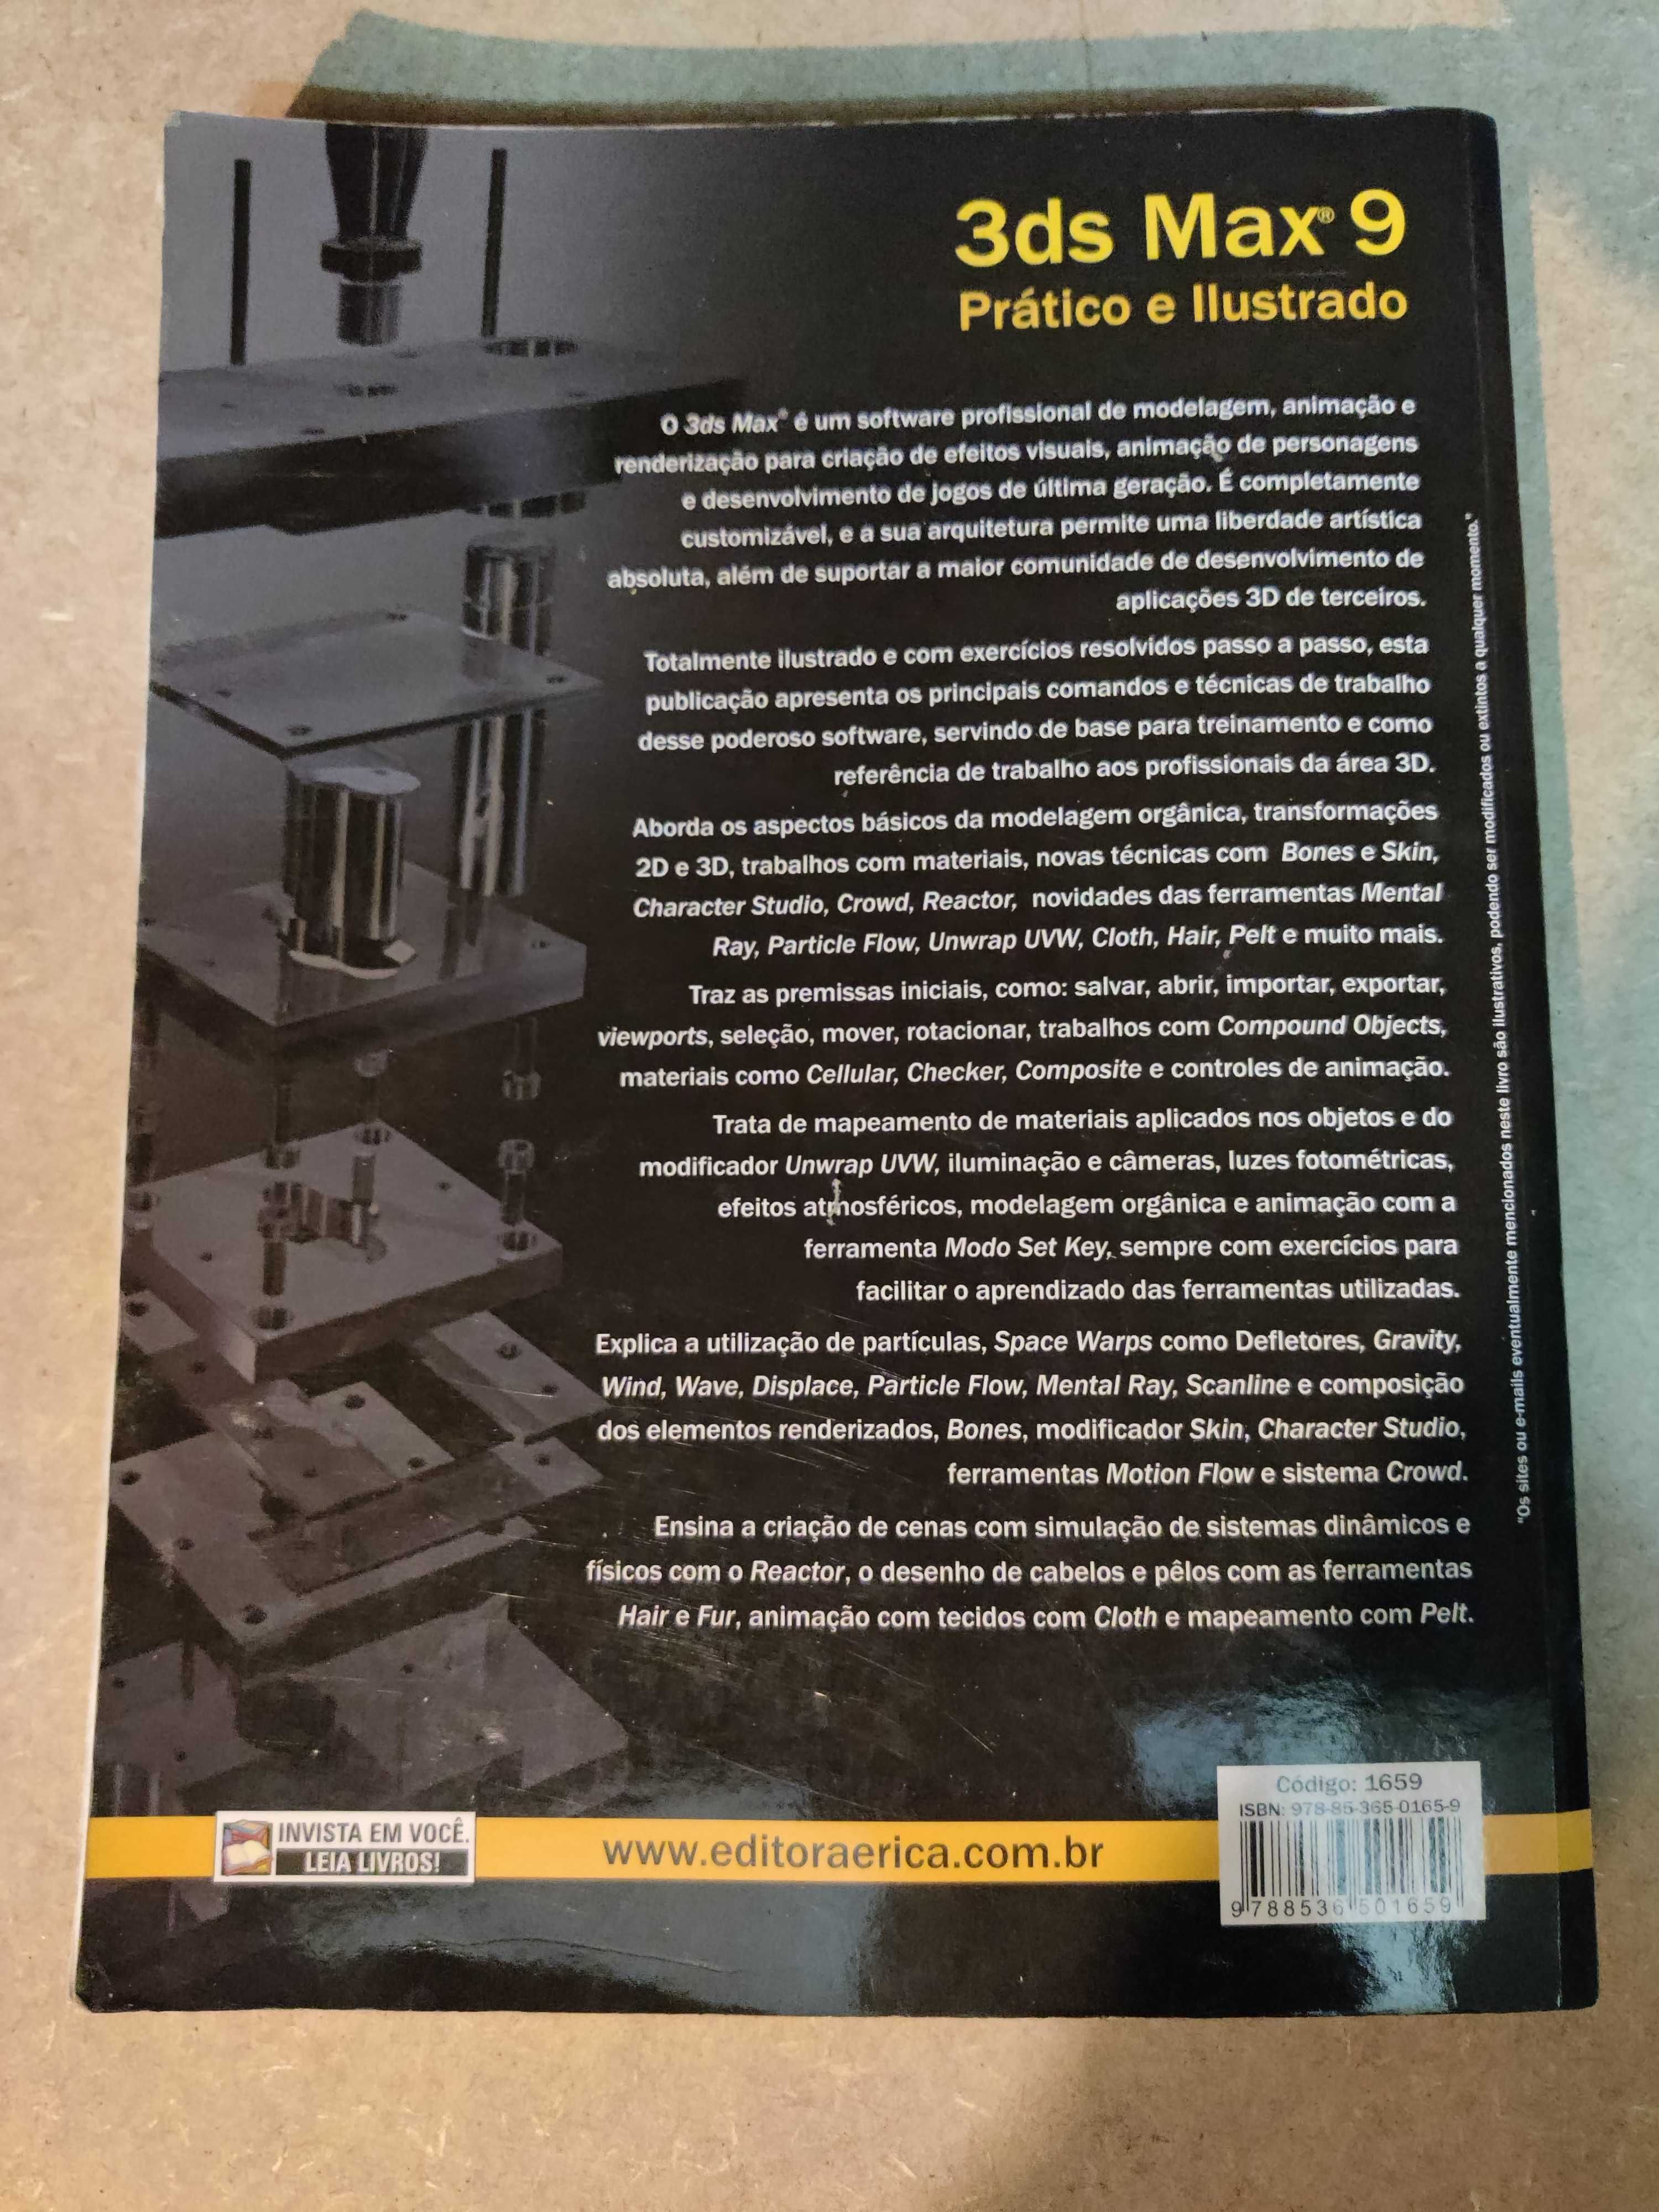 Livro "3ds Max 9 Prático e Ilustrado" de João Carlos da Silva